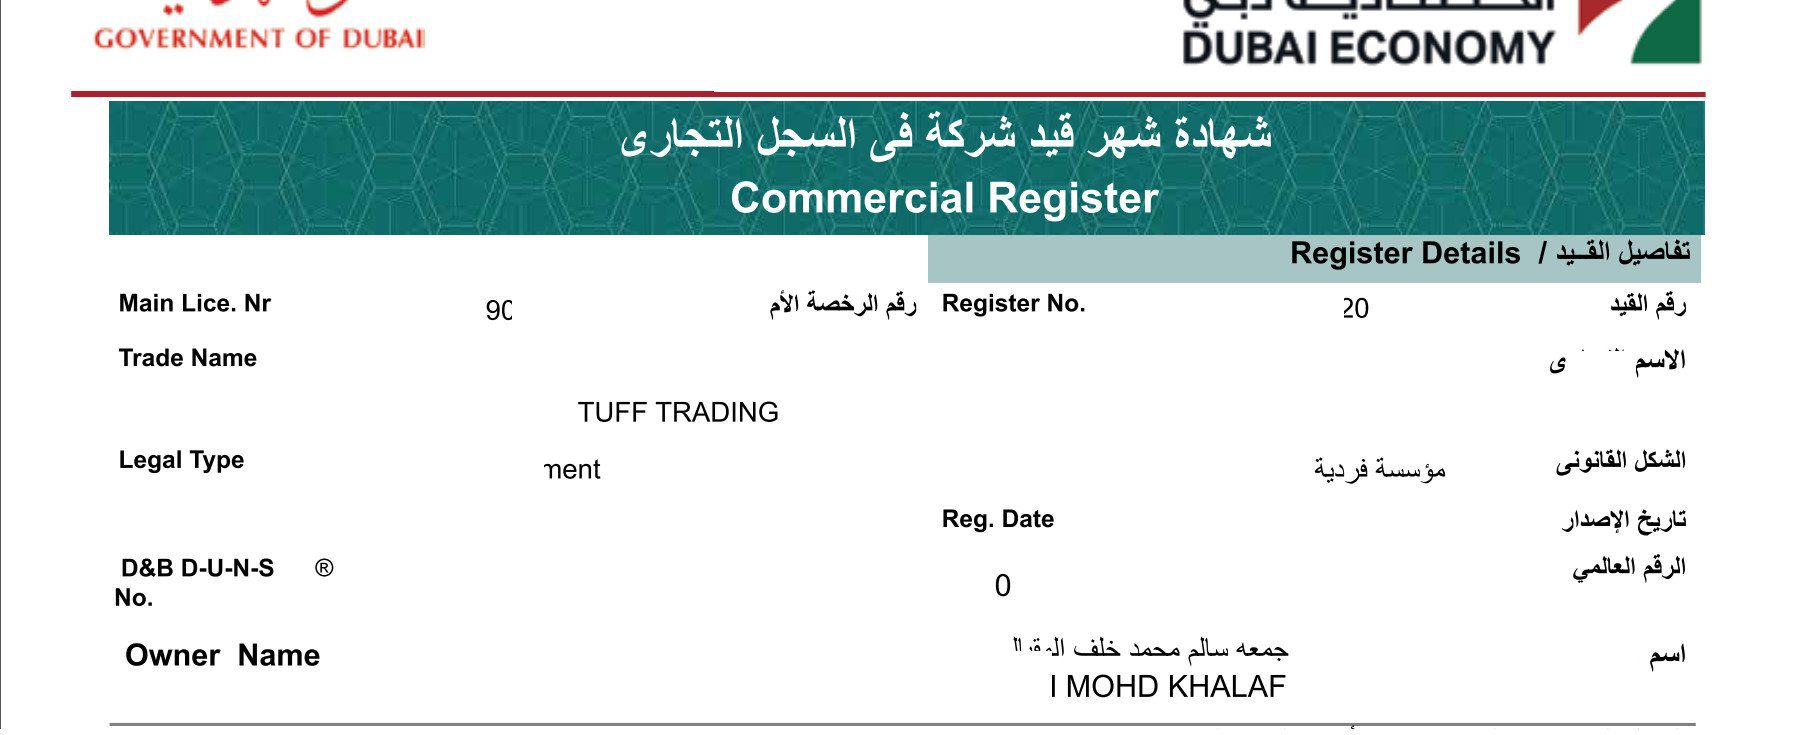 Đơn hàng xuất khẩu chanh tươi sang thị trường Dubai C01-260521